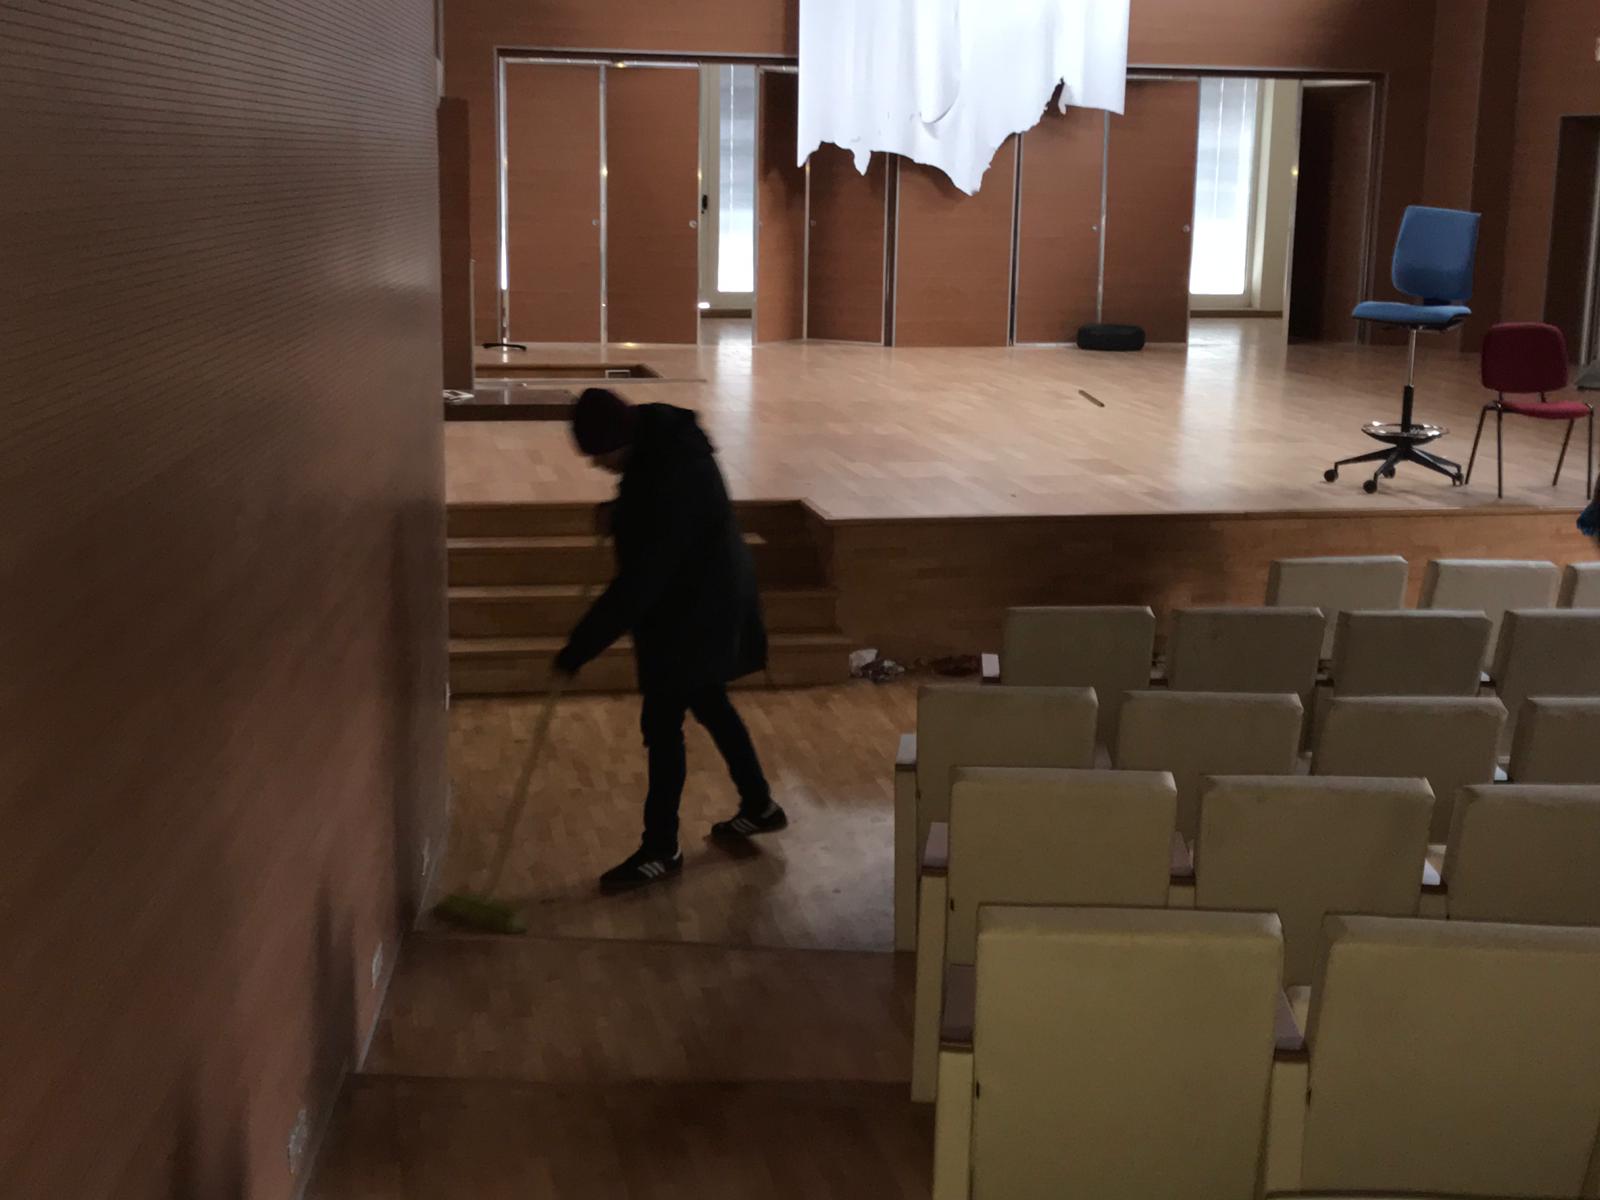 Benevento| Auditorium vandalizzato, AP ripulisce gli spazi